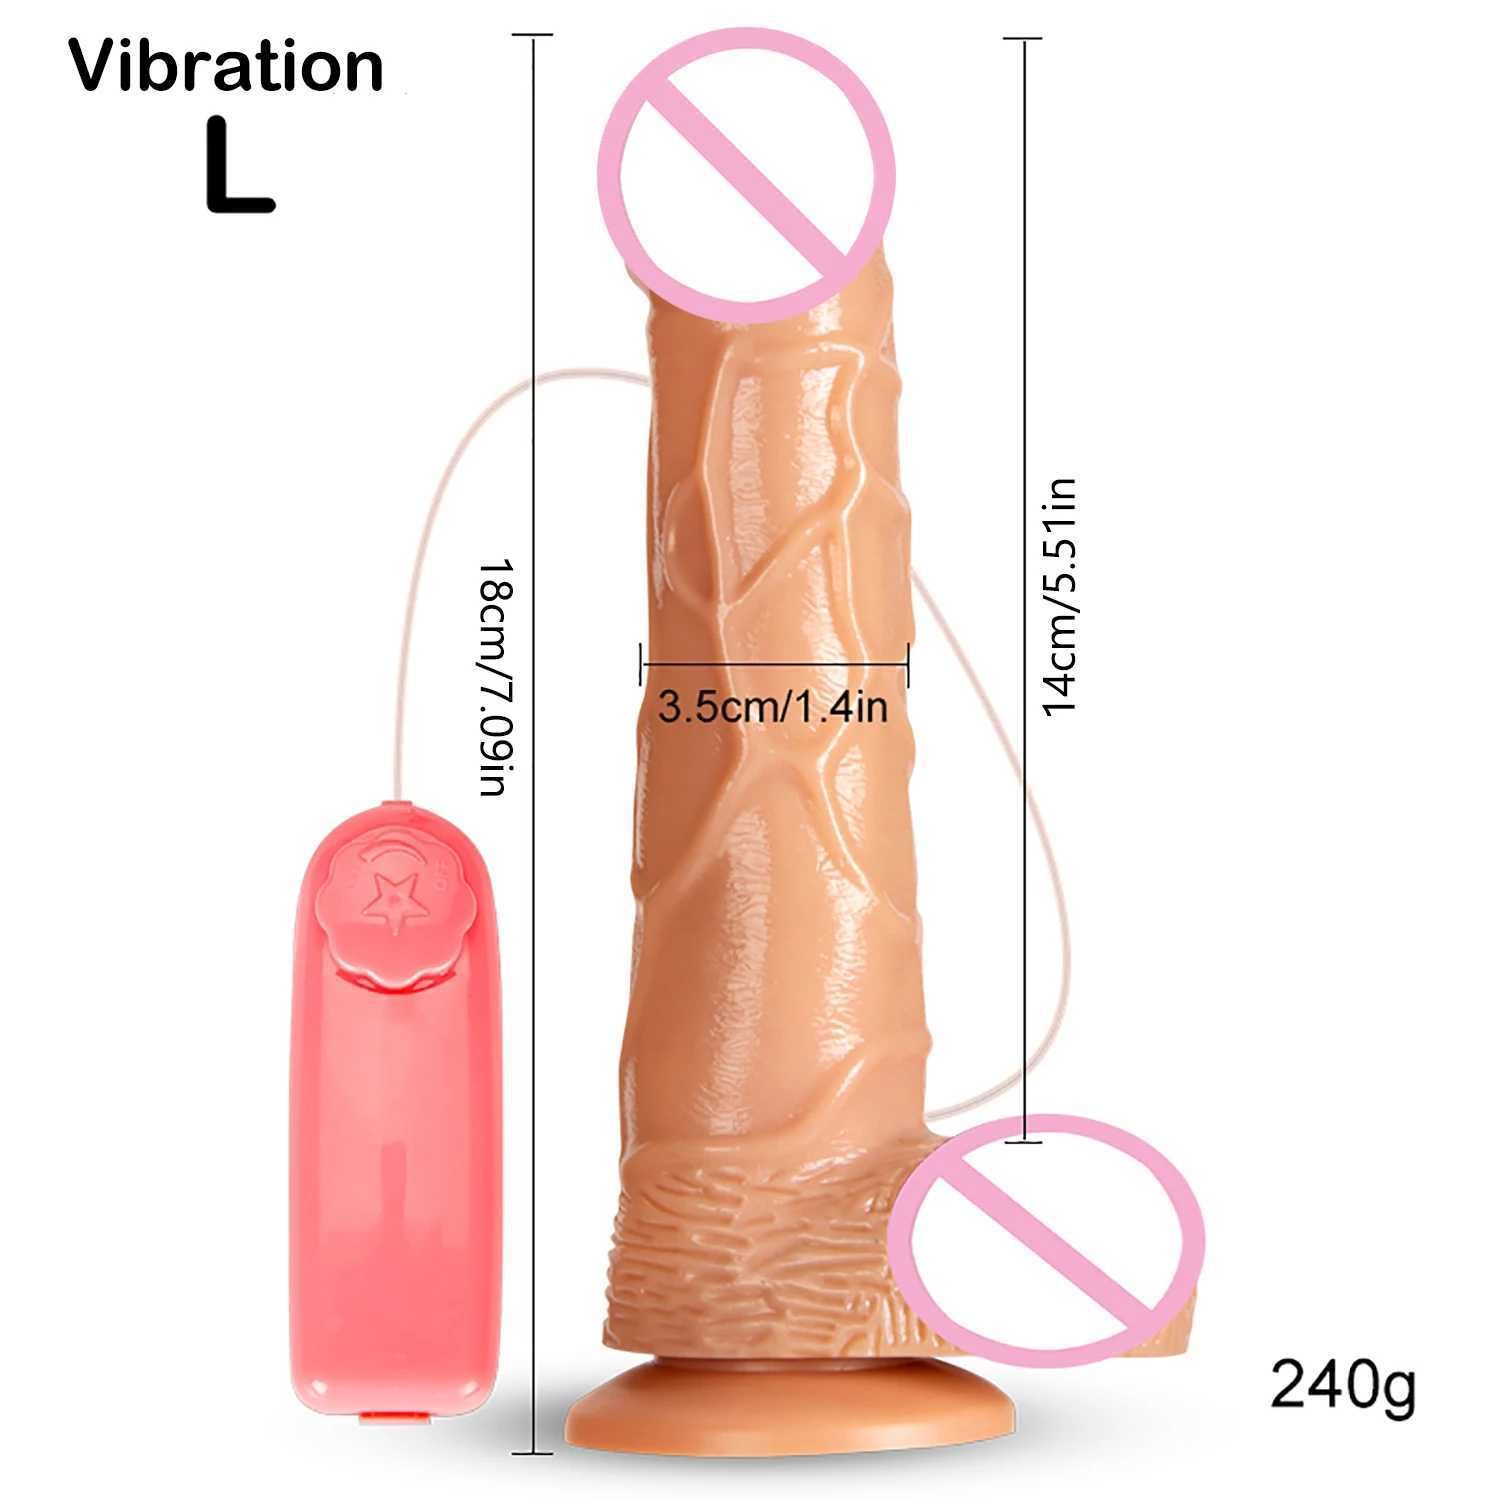 Vibration L.